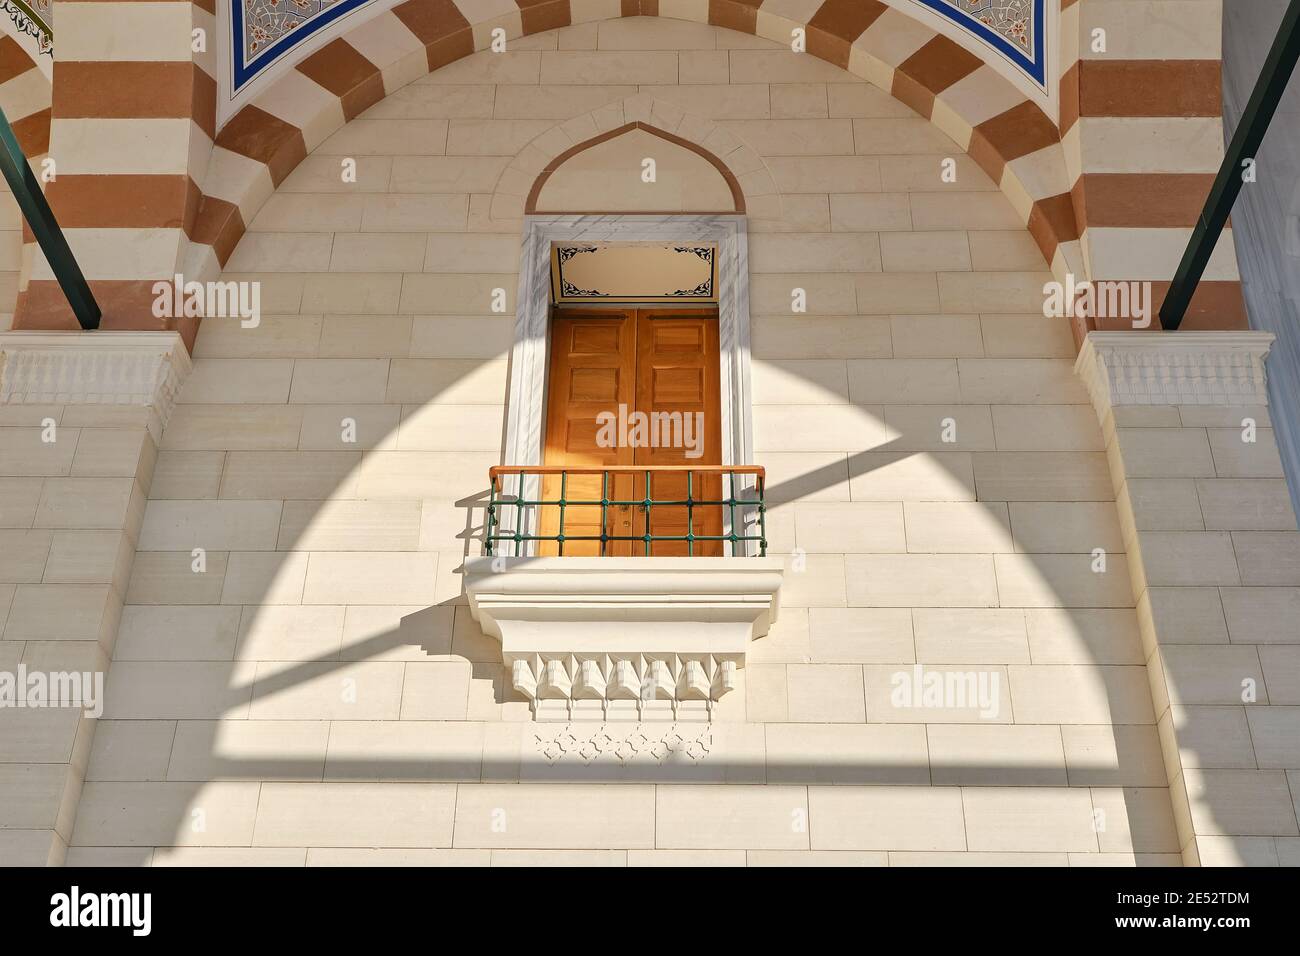 Große Camlica Moschee (Türkisch: Büyük Çamlıca Camii). Balkon der Moschee im Innenhof. Architektur im osmanischen Stil. Stockfoto